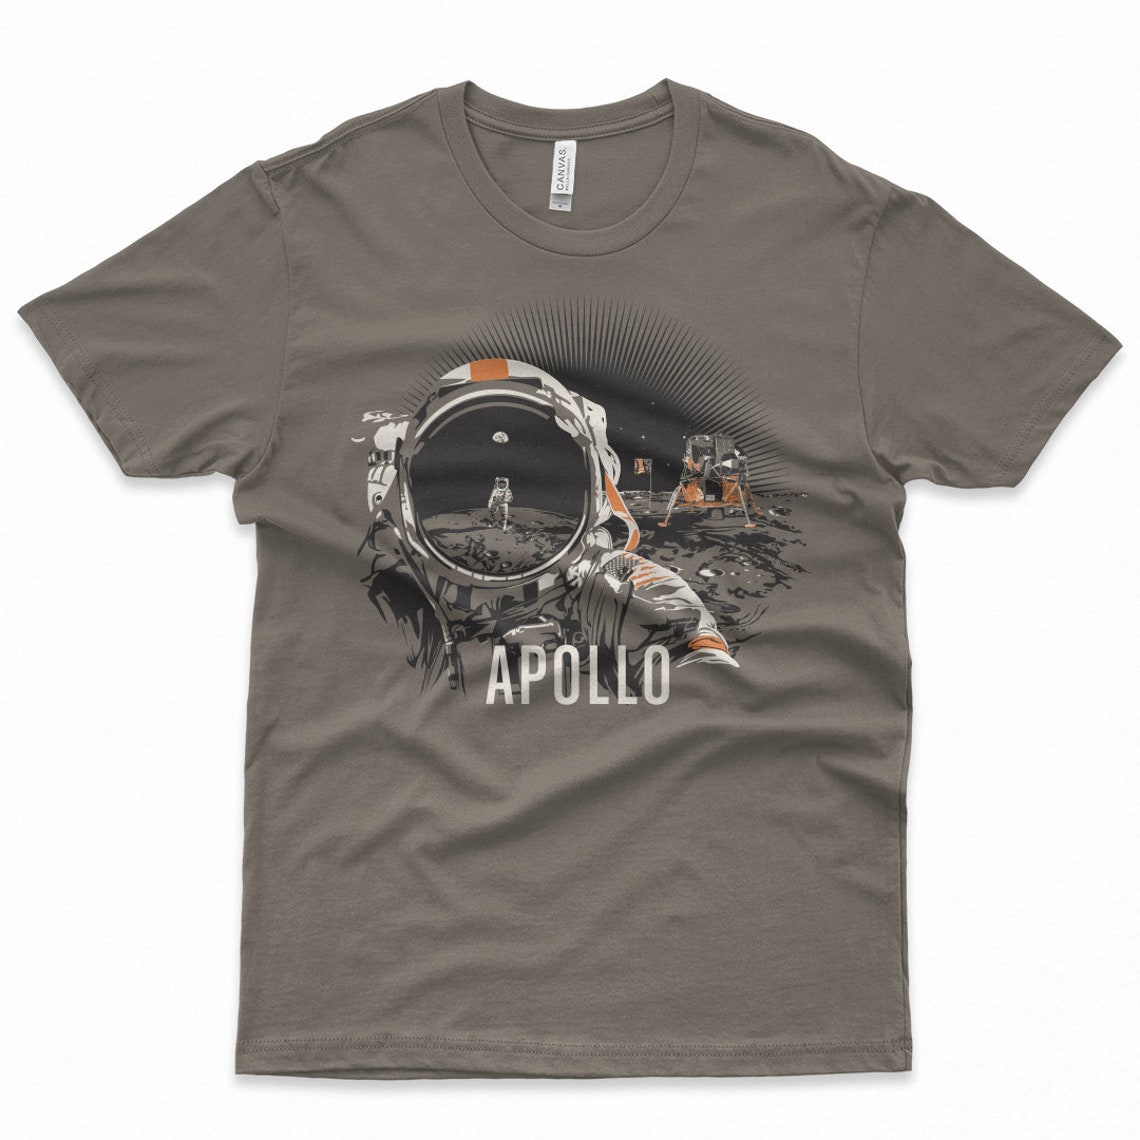 Apollo T-shirt for Women | Etsy